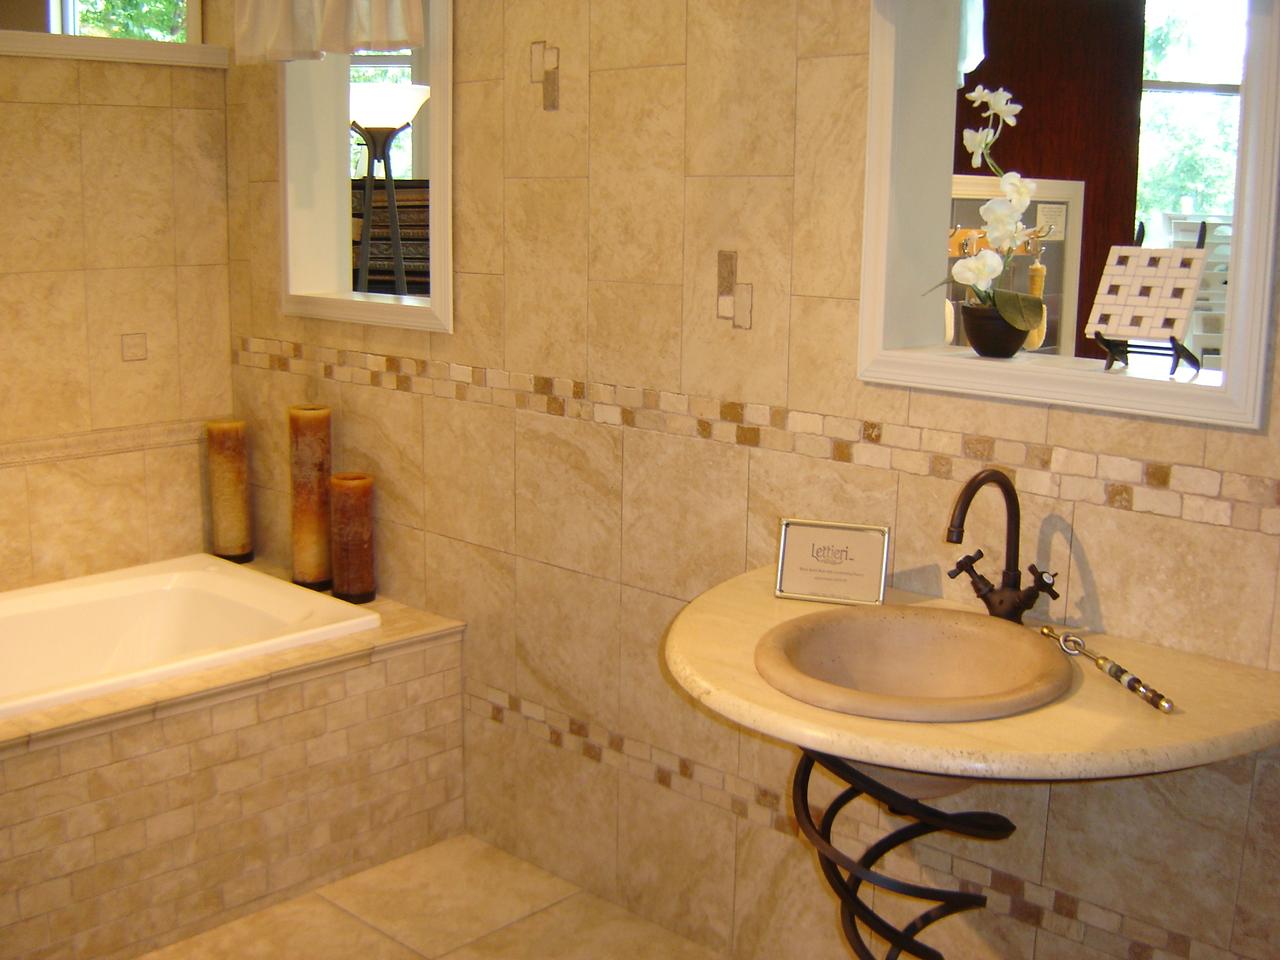 Bathroom ceramic tile design pictures